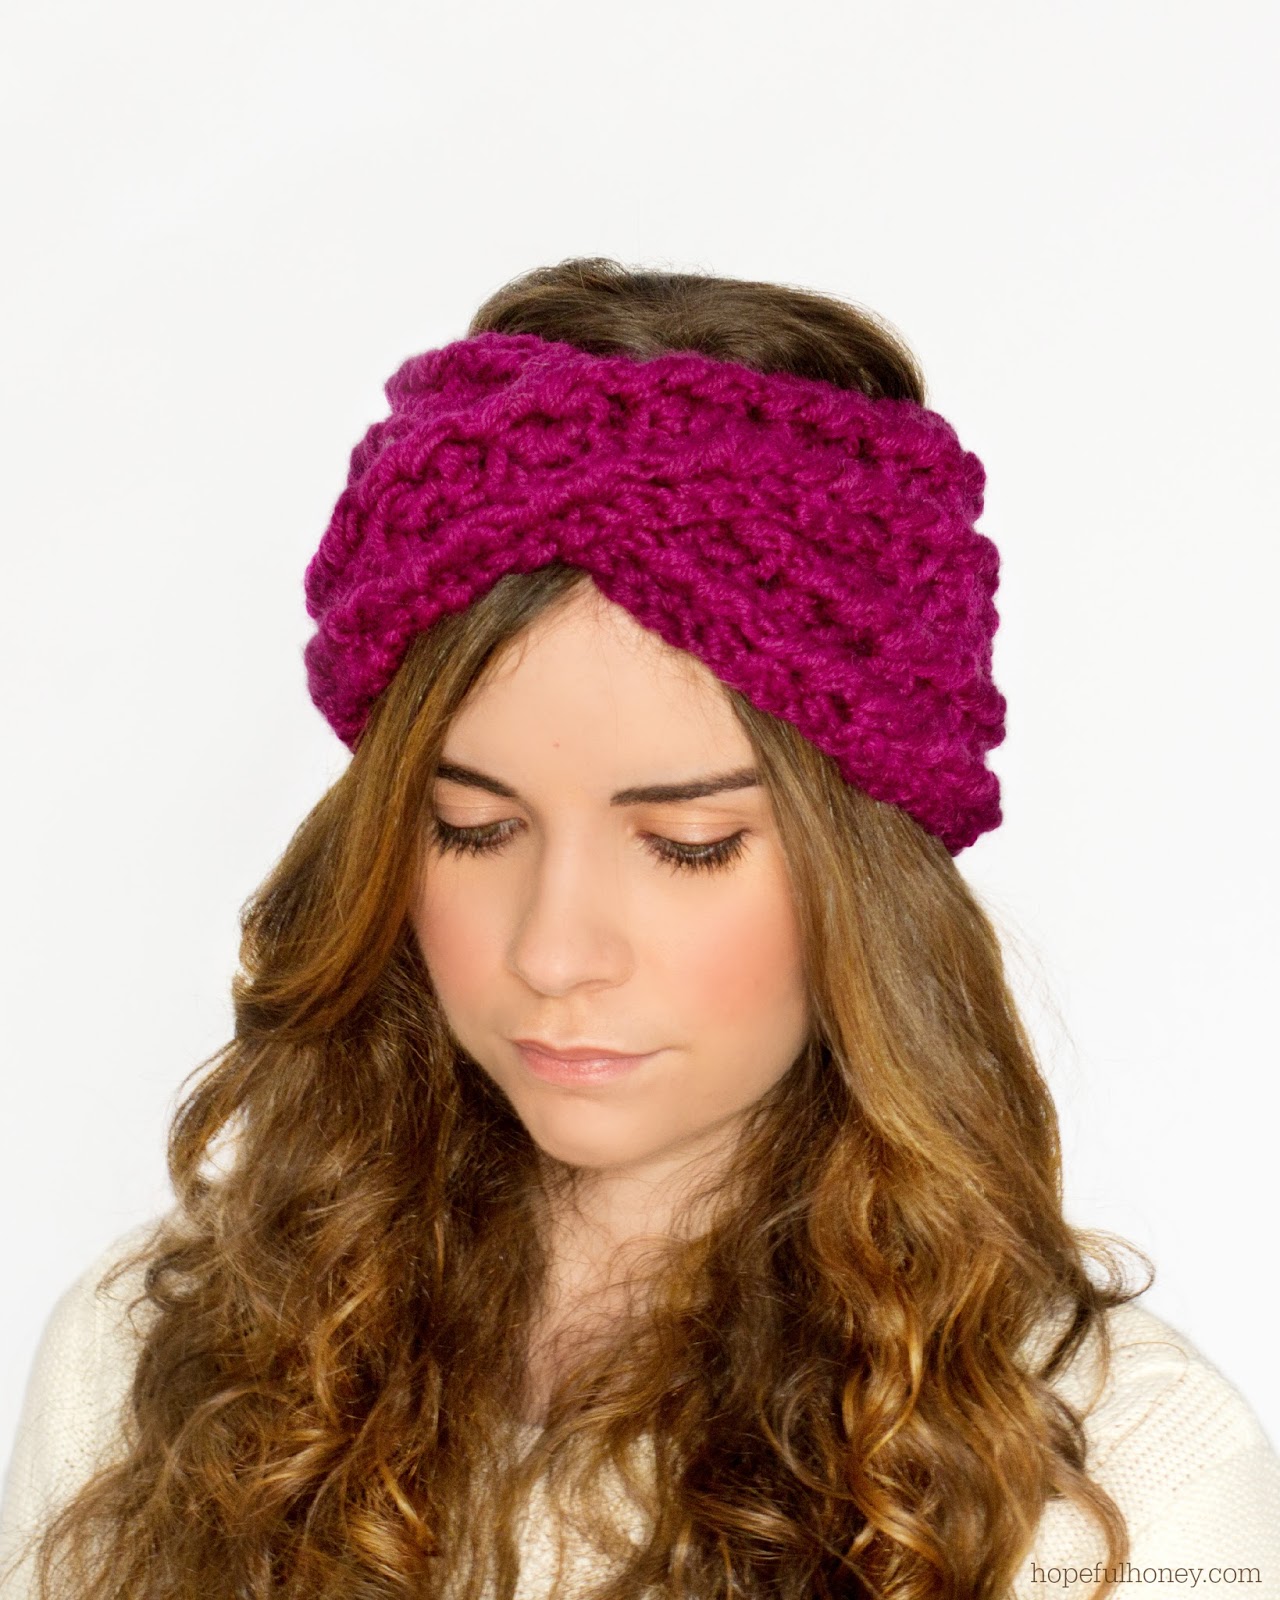 Chunky knit headband pattern